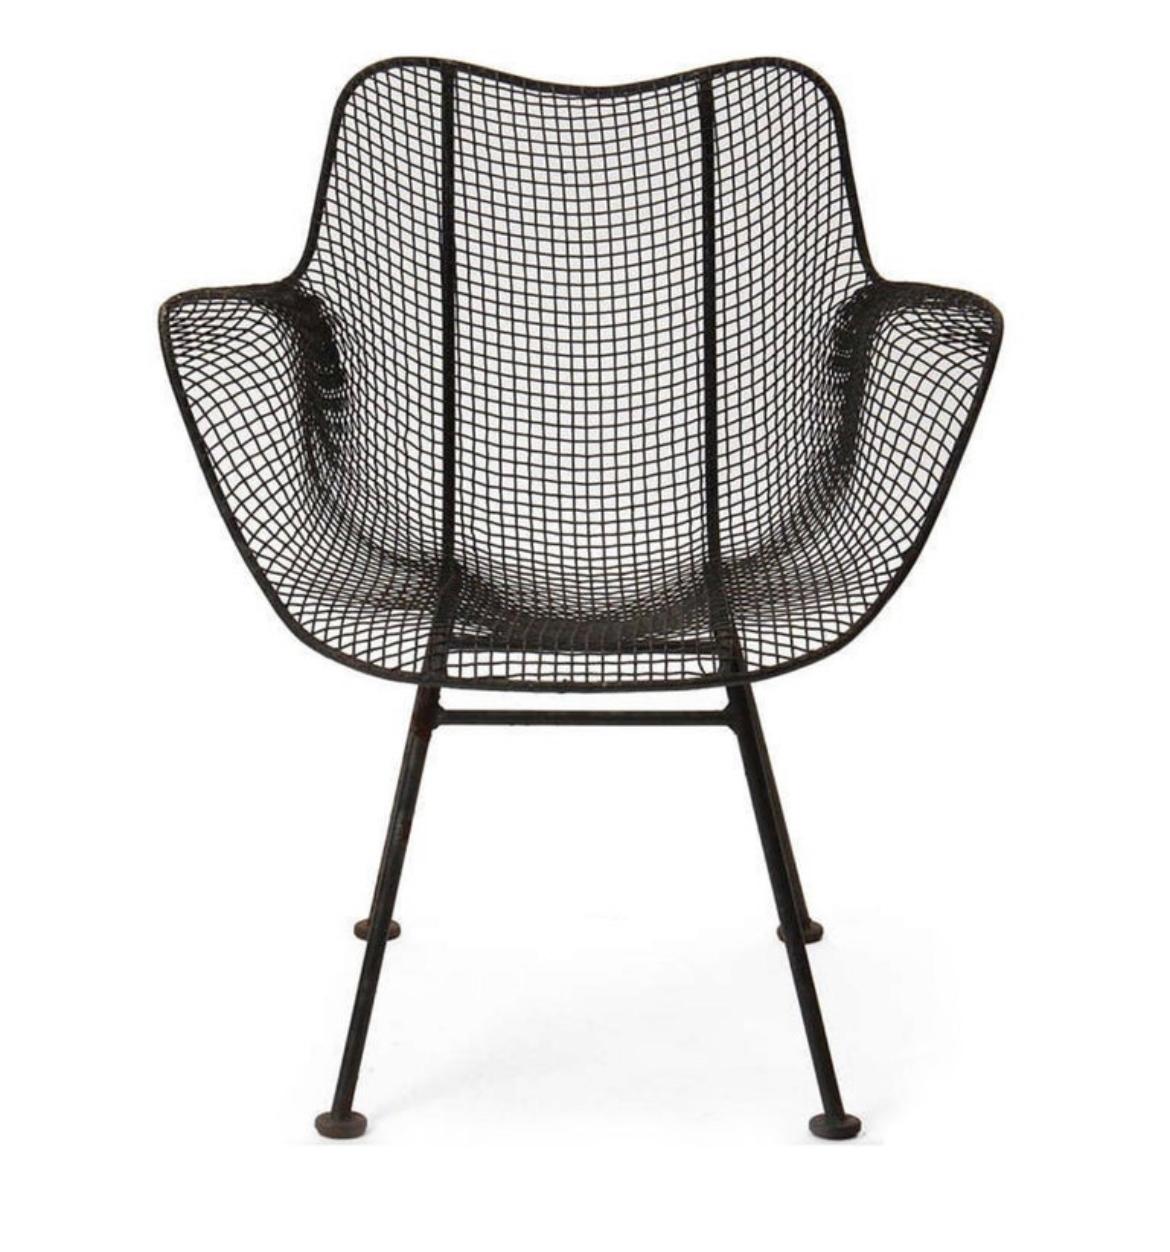 Ensemble de (4) fauteuils Patio de style mid-century Russell Woodard sculptura mesh organiquement sculpté. Chaises de patio d'extérieur au design très iconique. Toutes les chaises sont originales et datent de 1960. Elles ont été repeintes avec une